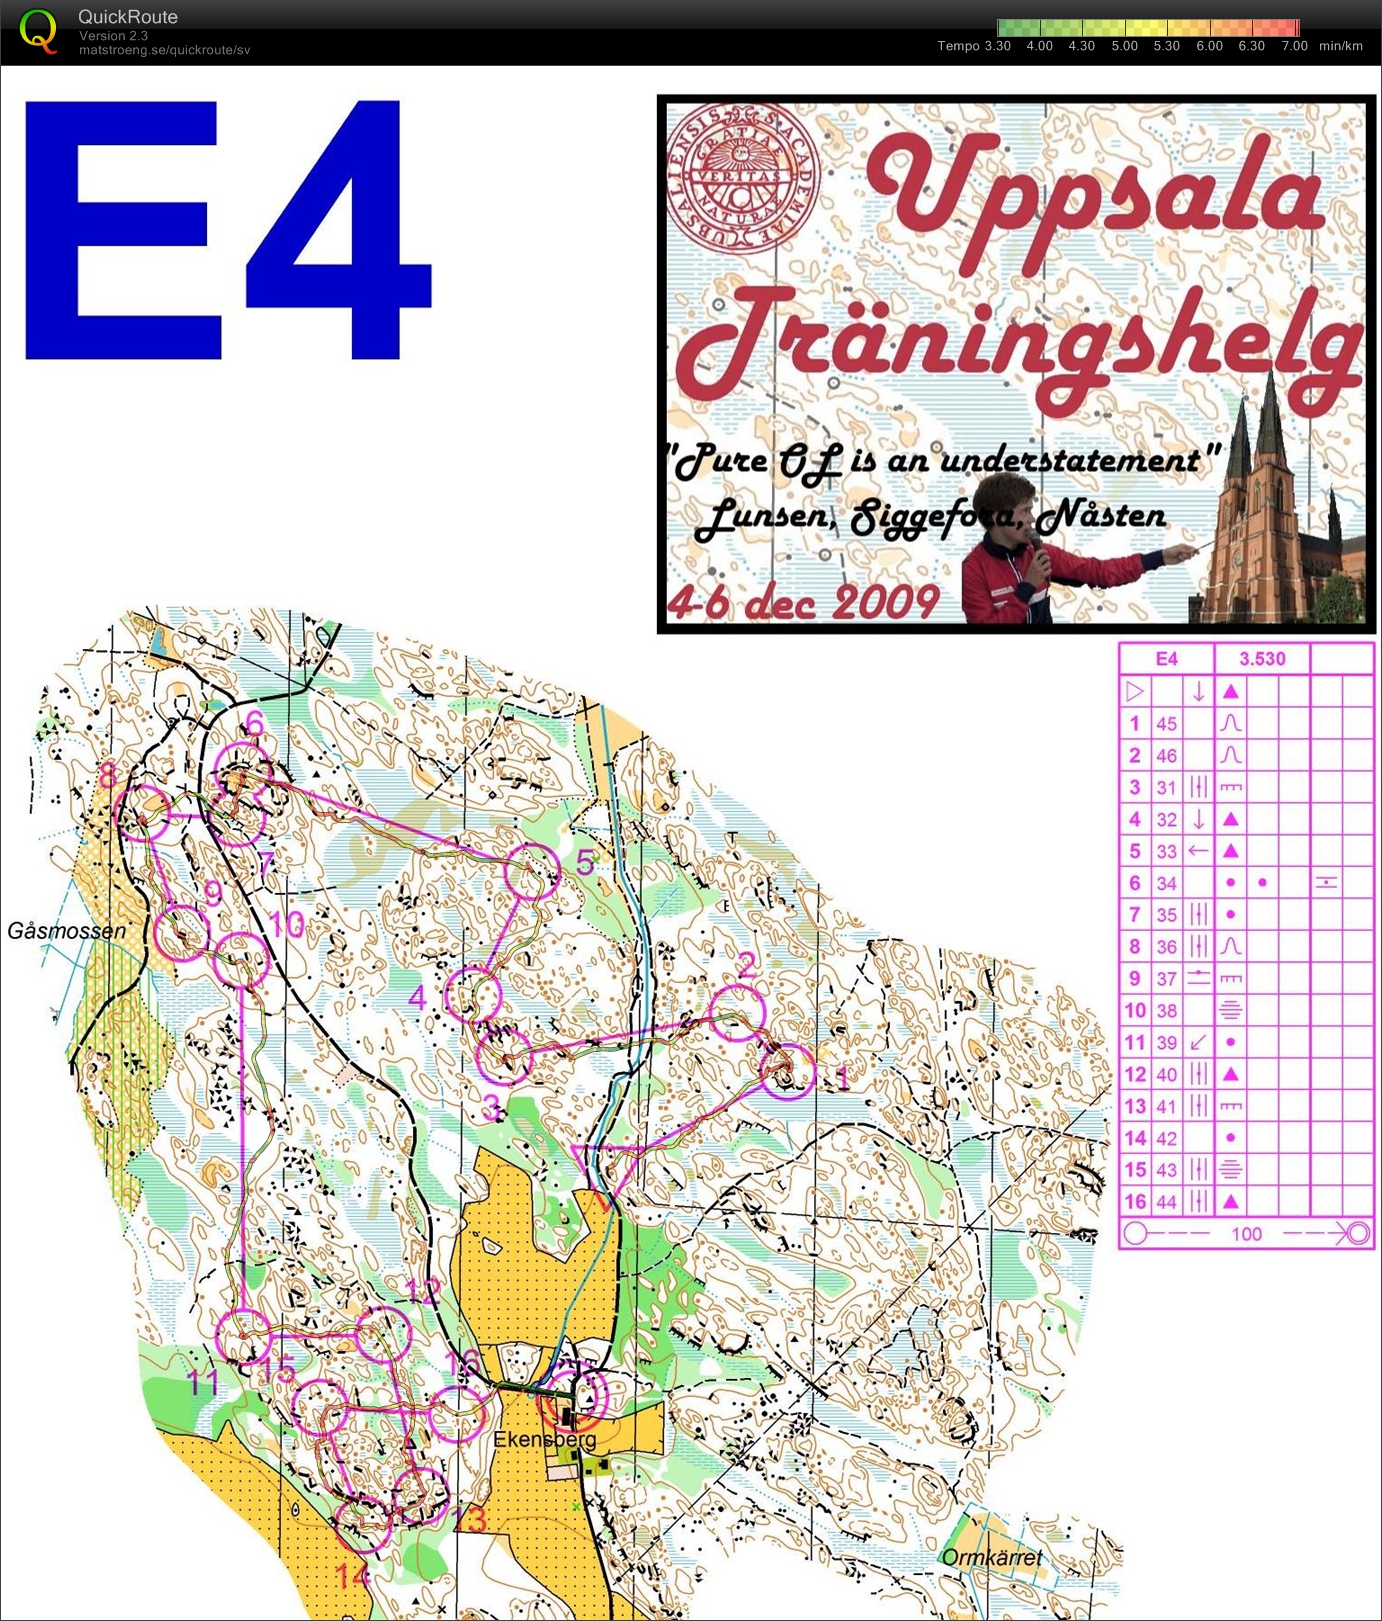 Uppsala träningshelg - Medel Ekensberg (05.12.2009)